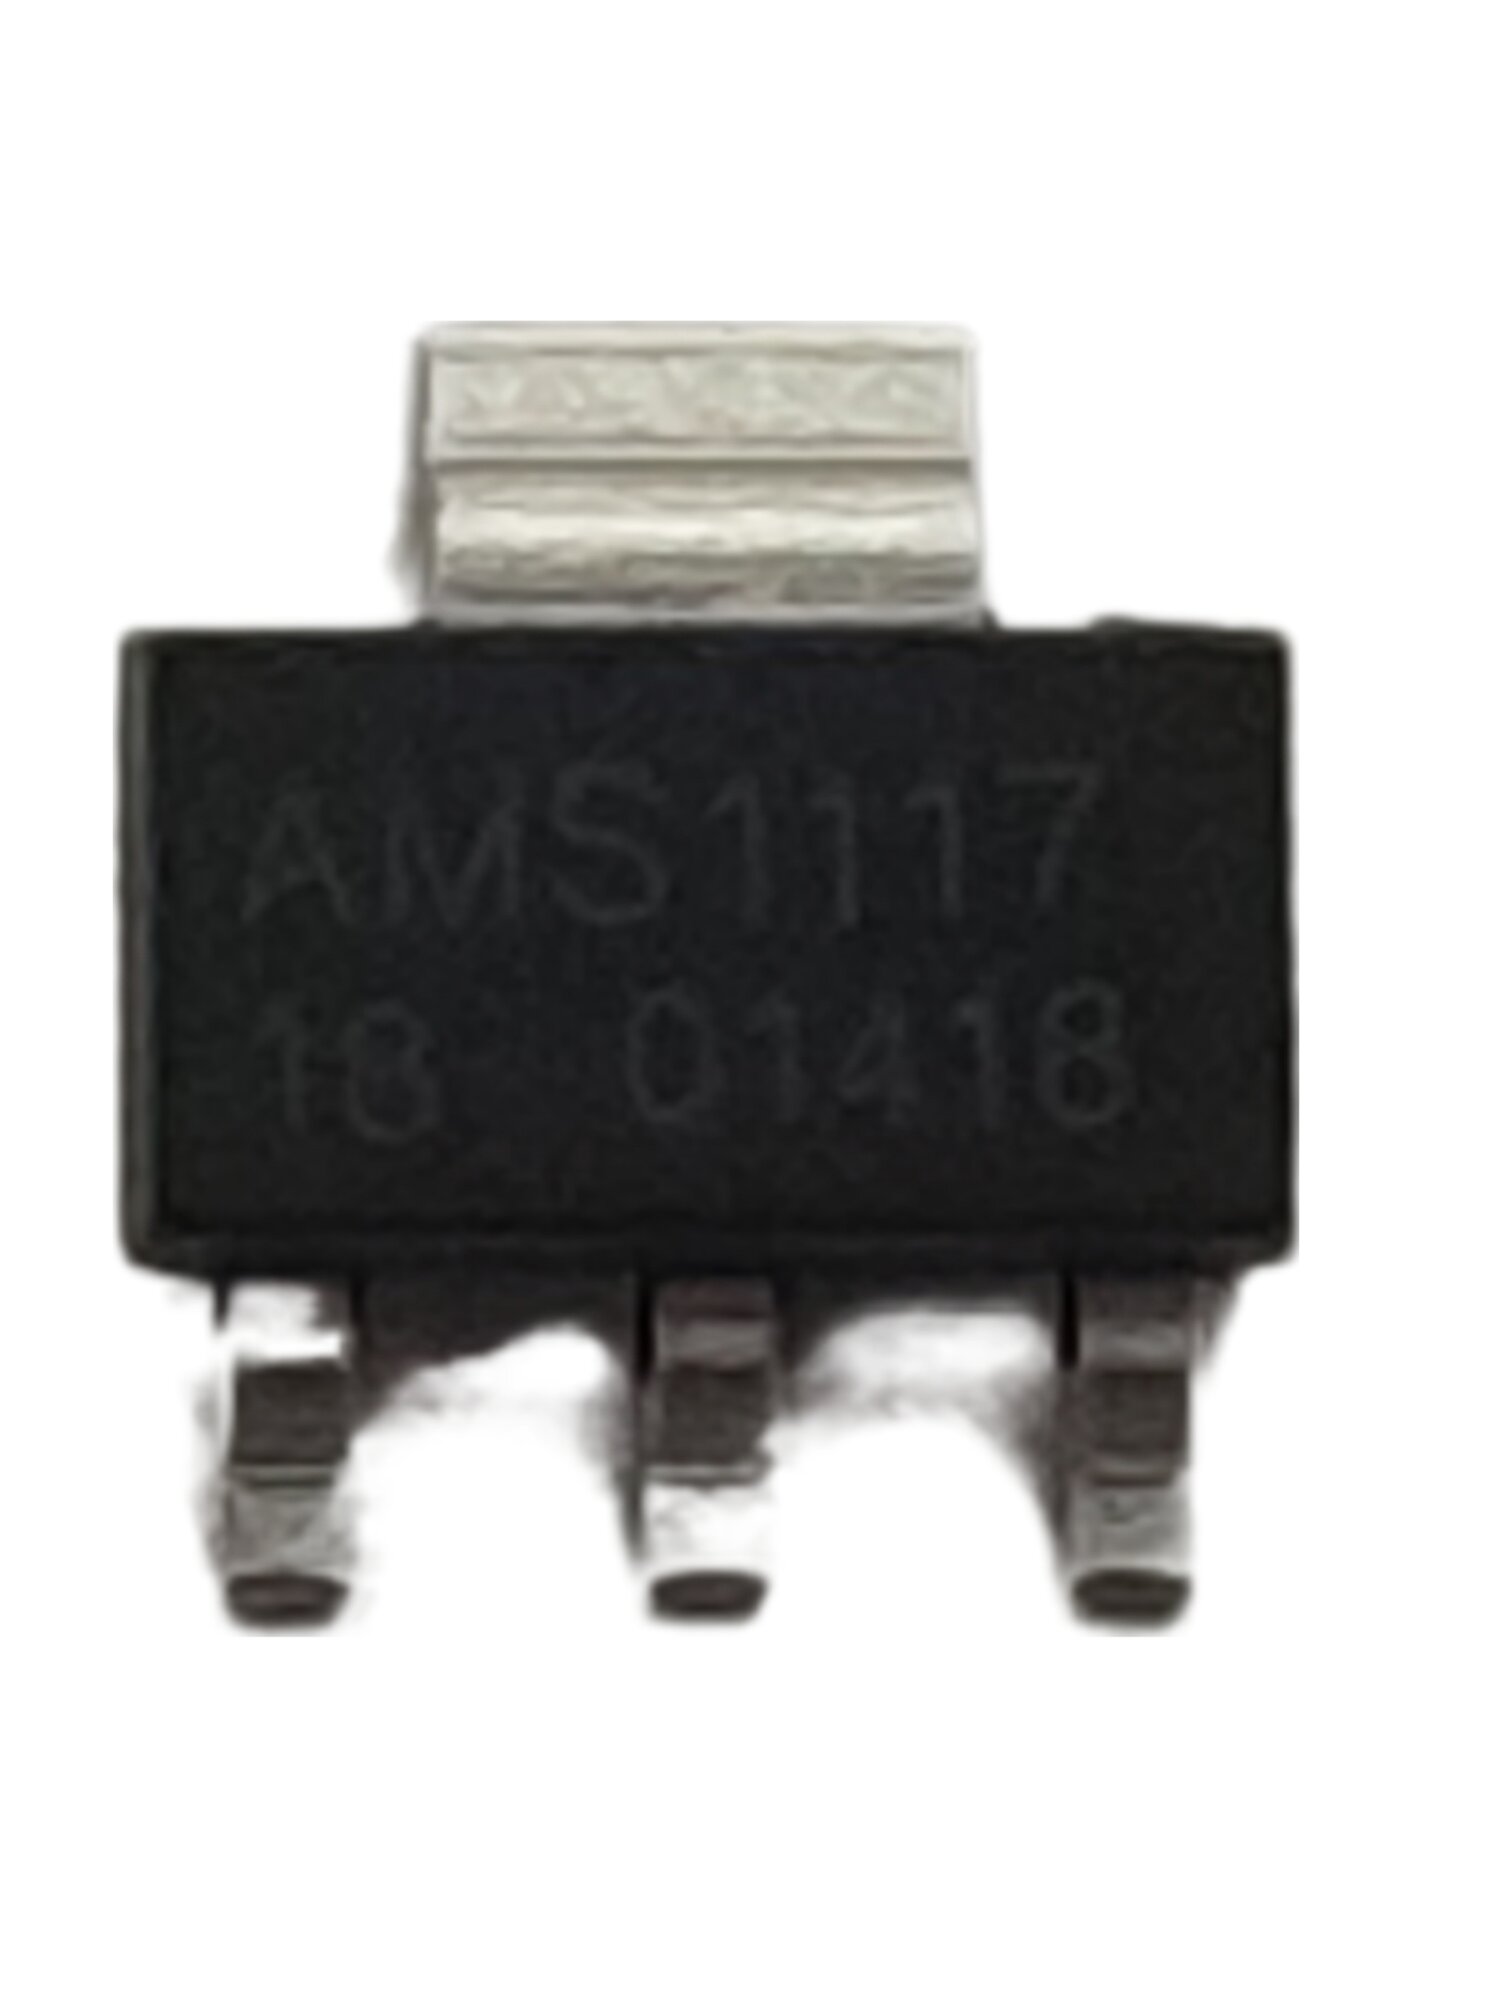 Линейный стабилизатор AMS1117-1.8V